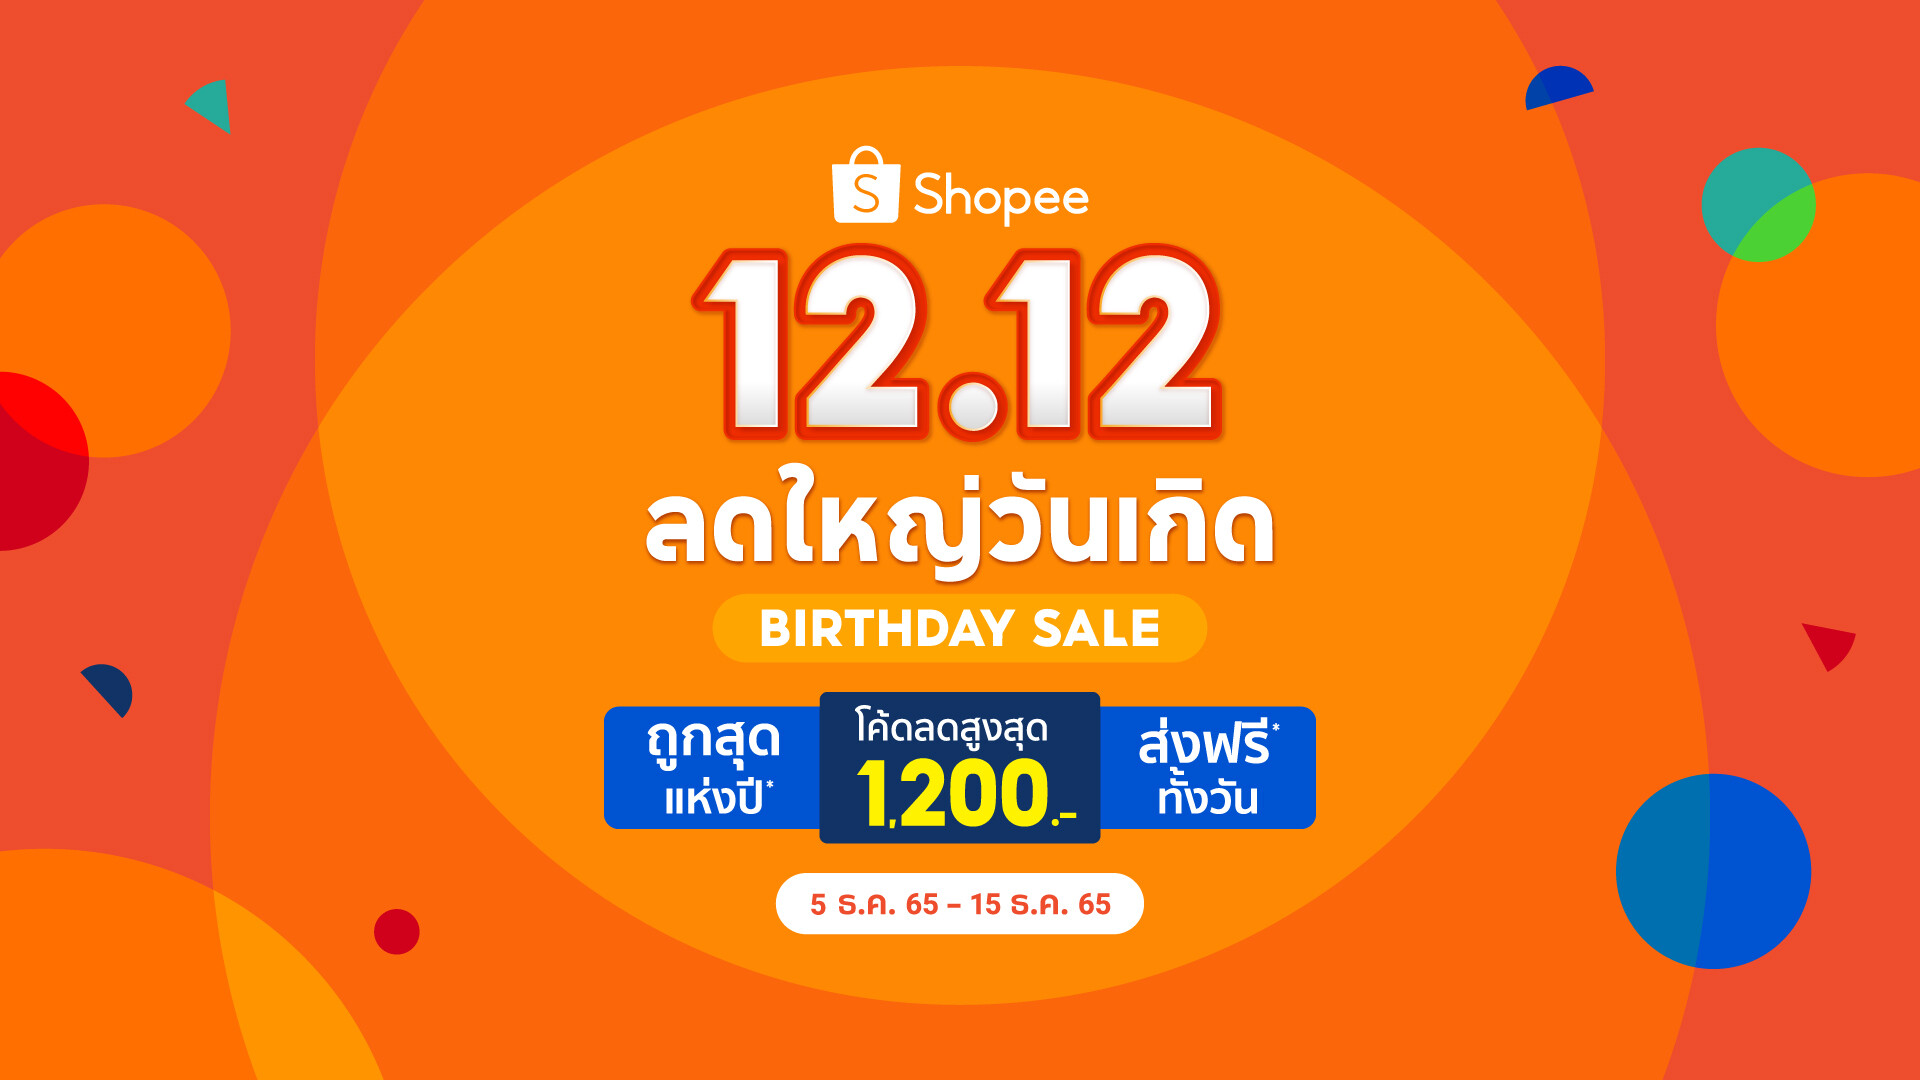 ช้อปปี้ชวนผู้ใช้งานชาวไทยฉลองใหญ่วันเกิด พร้อมมอบความสุขเต็มเติมรอยยิ้มส่งท้ายปี ไปกับแคมเปญ "Shopee 12.12 ลดใหญ่วันเกิด"